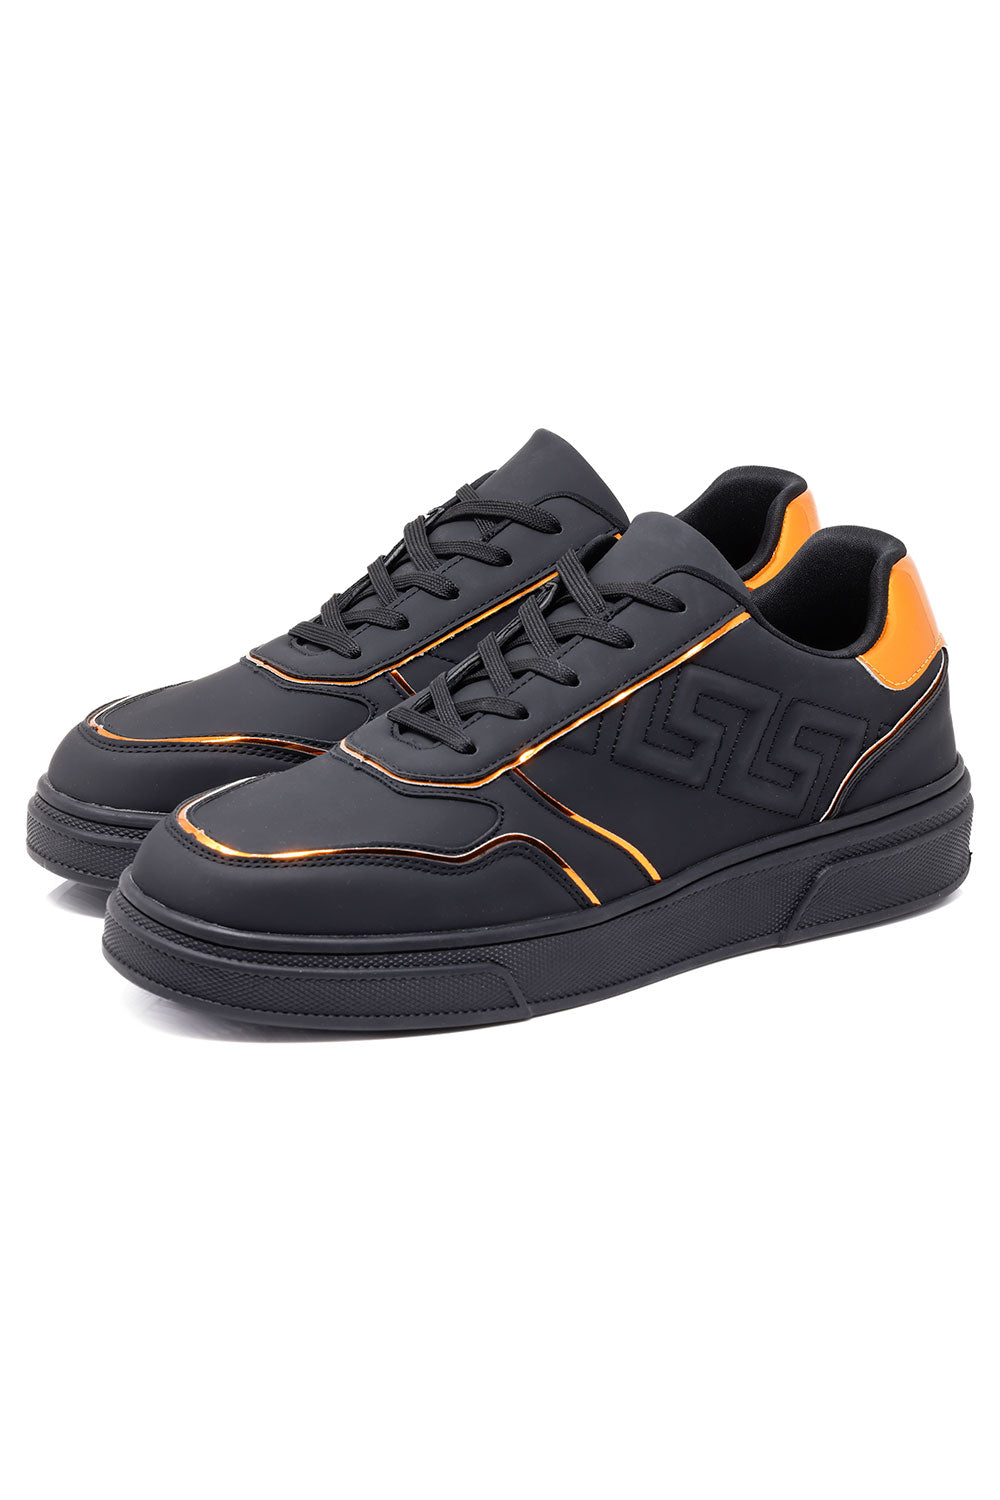 Barabas Men's Greek Key Sole Pattern Lace-up Sneakers 4SK09 Black Gold